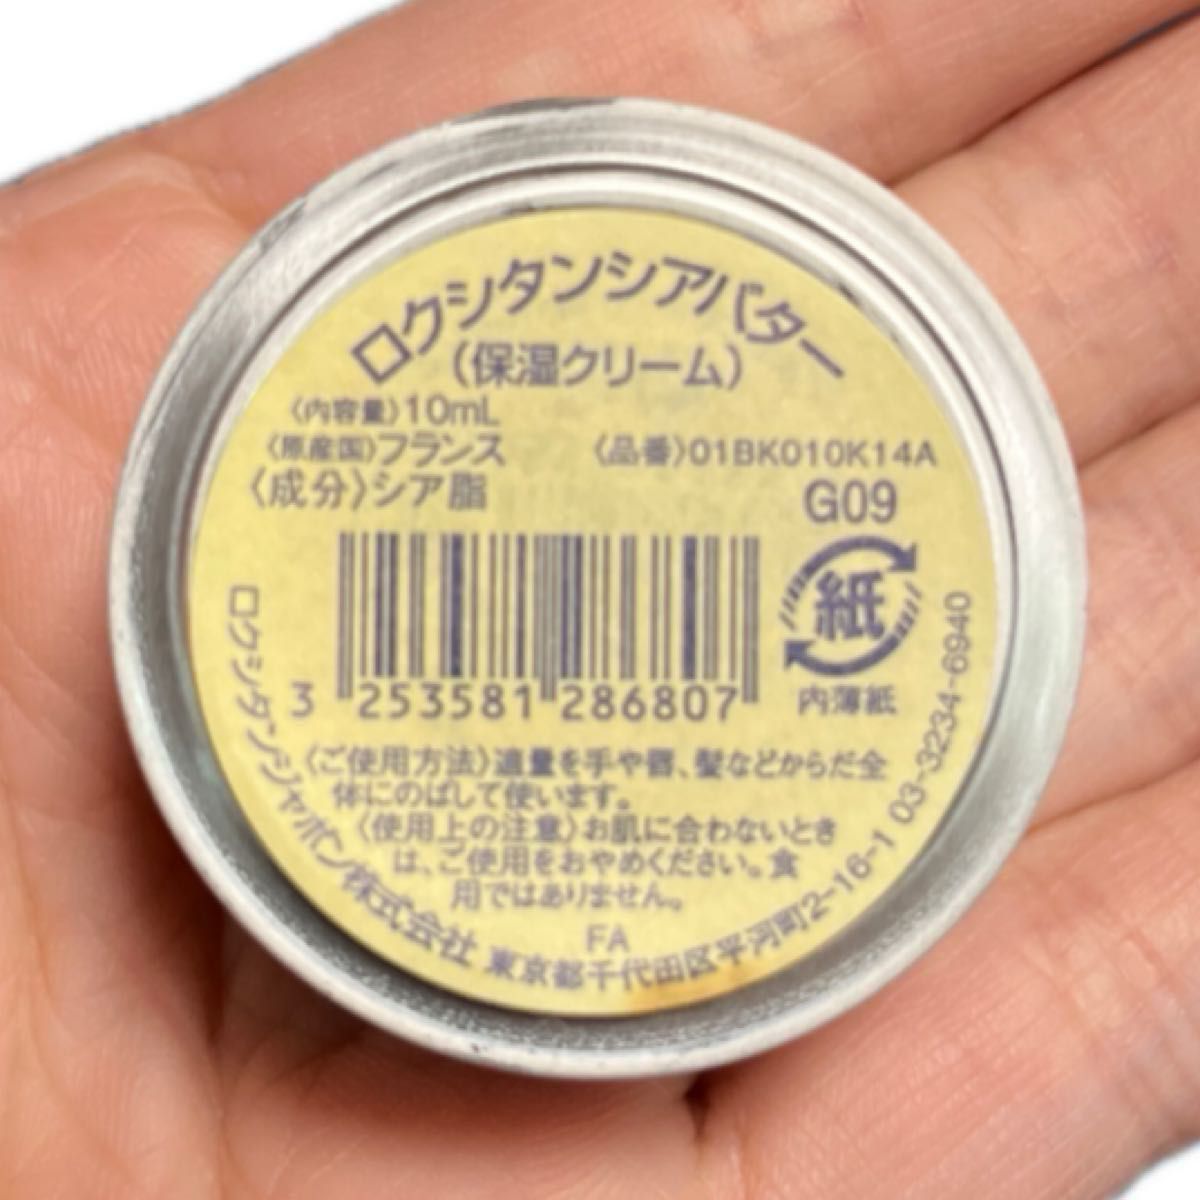 ロクシタン LOCCITANE シアバター　 ボンメールソープ(化粧石けん) 新品・未使用品